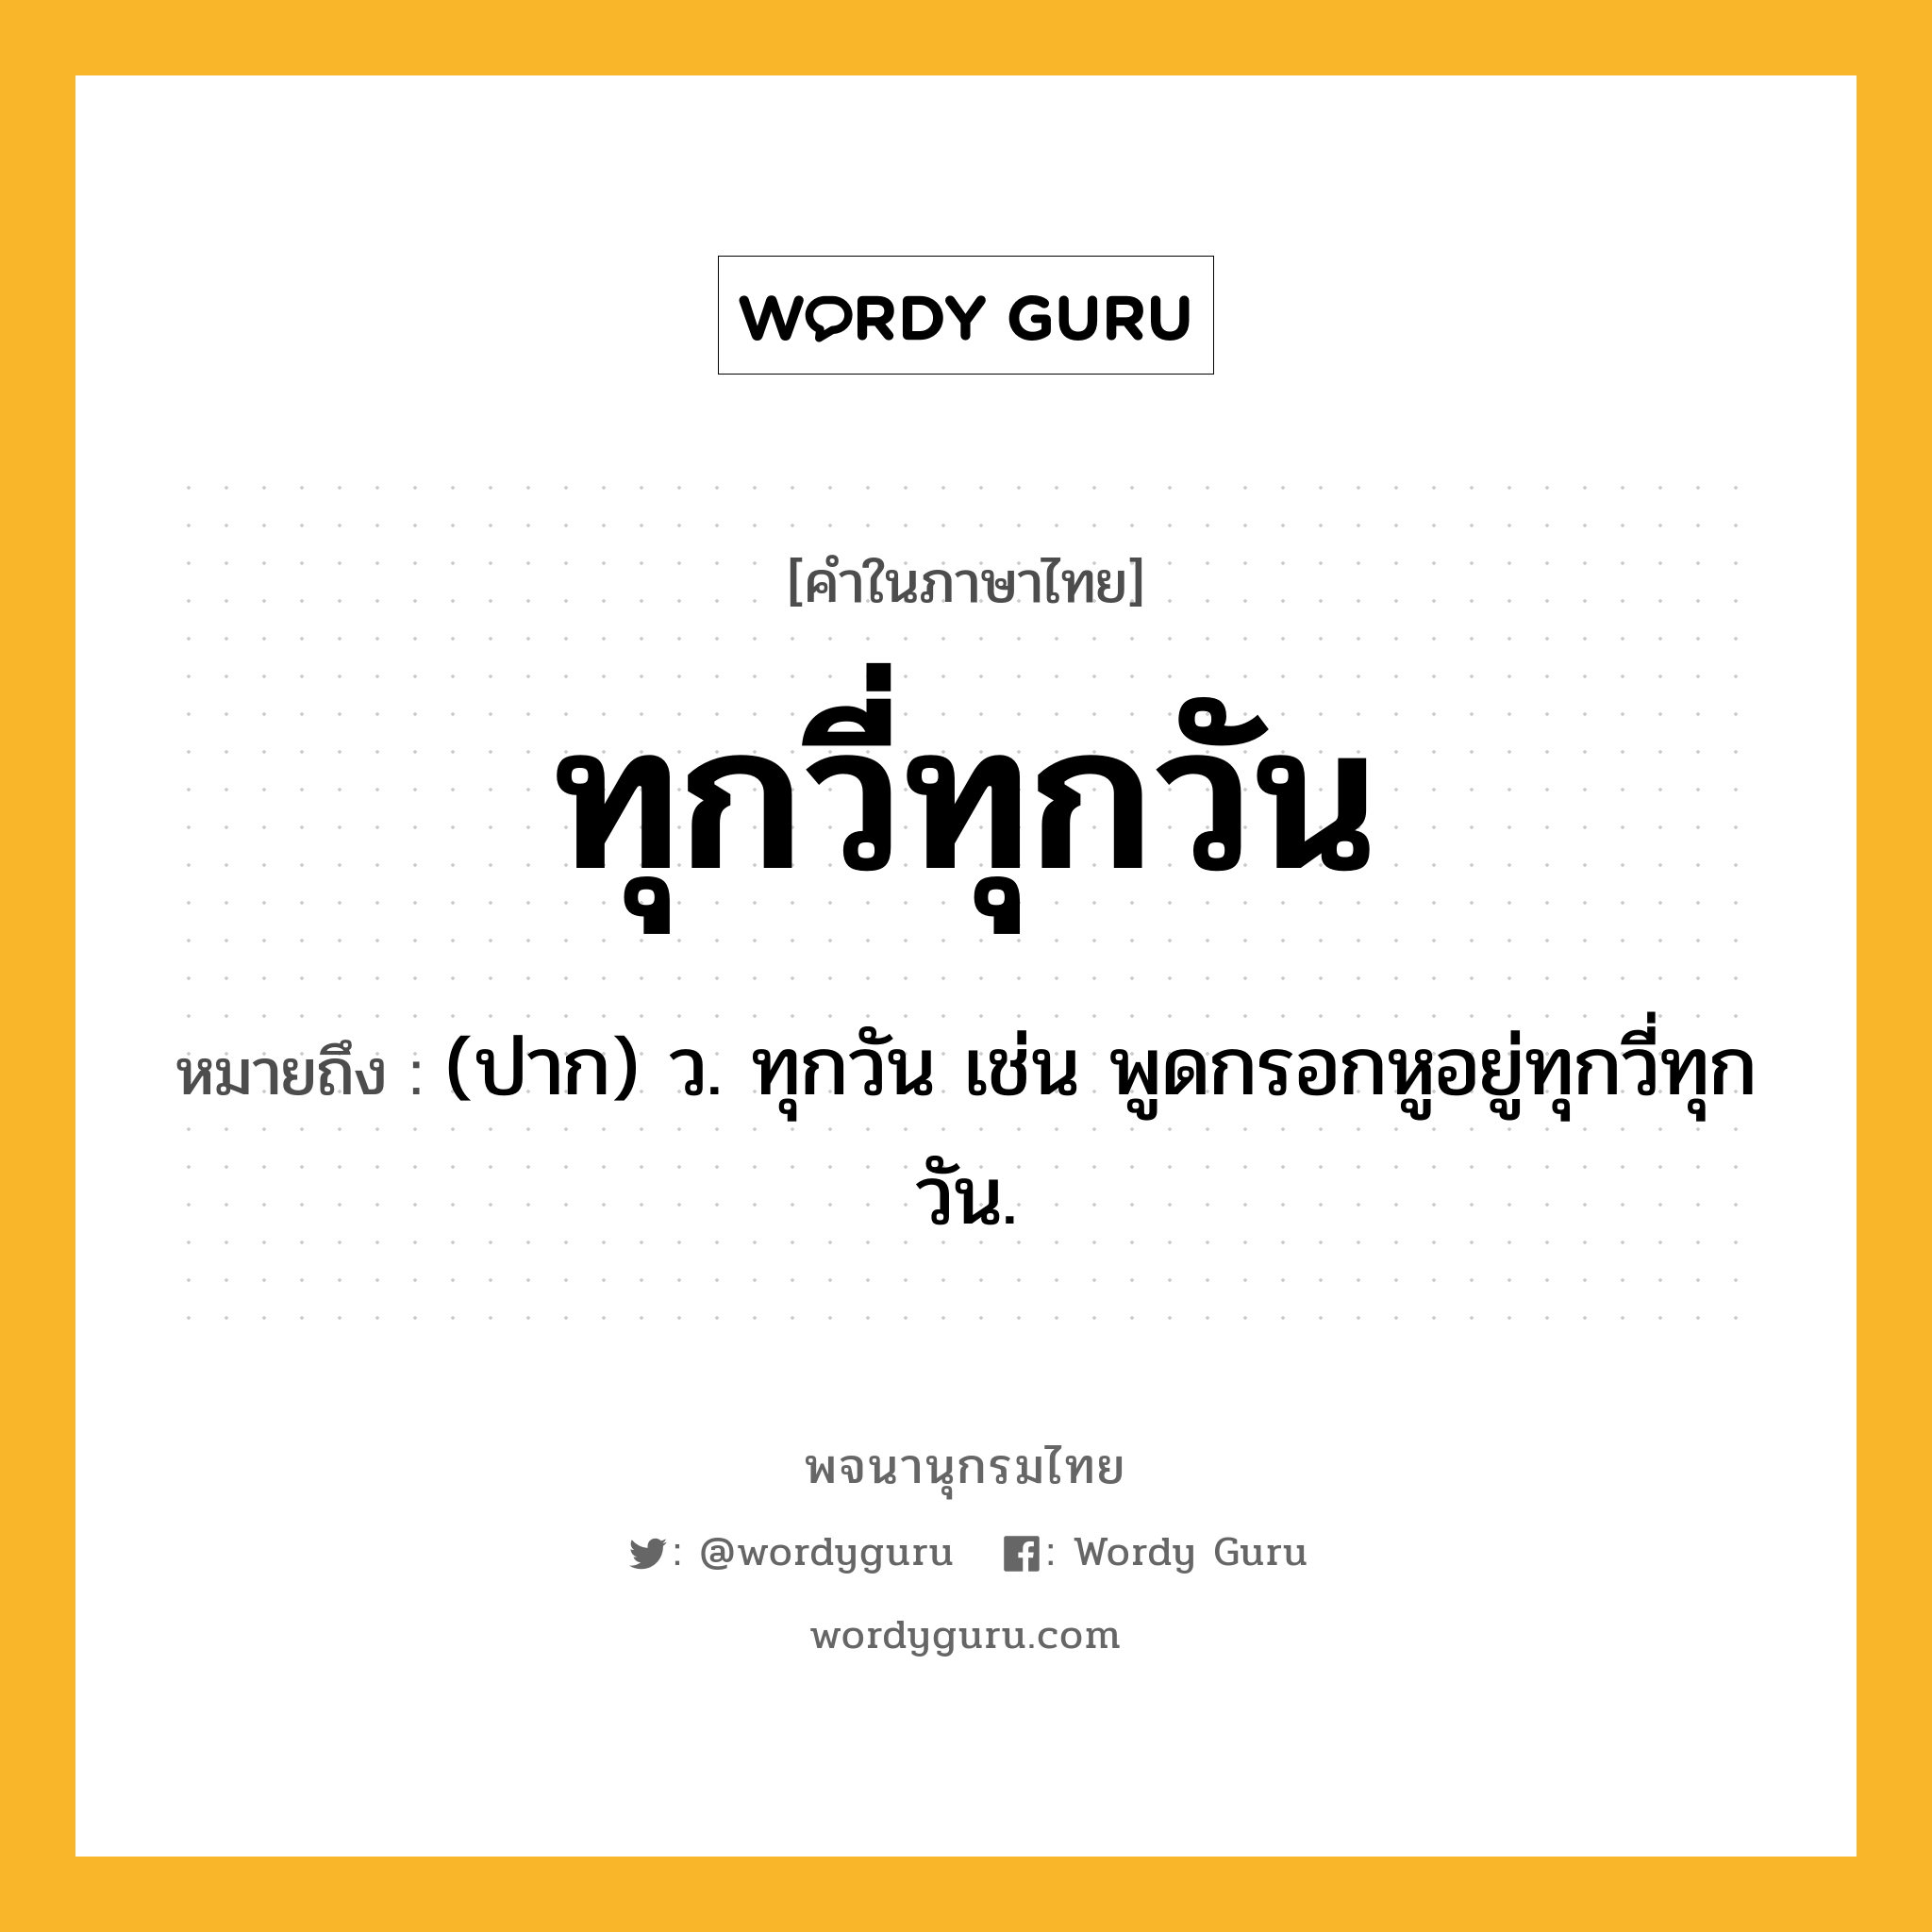 ทุกวี่ทุกวัน หมายถึงอะไร?, คำในภาษาไทย ทุกวี่ทุกวัน หมายถึง (ปาก) ว. ทุกวัน เช่น พูดกรอกหูอยู่ทุกวี่ทุกวัน.